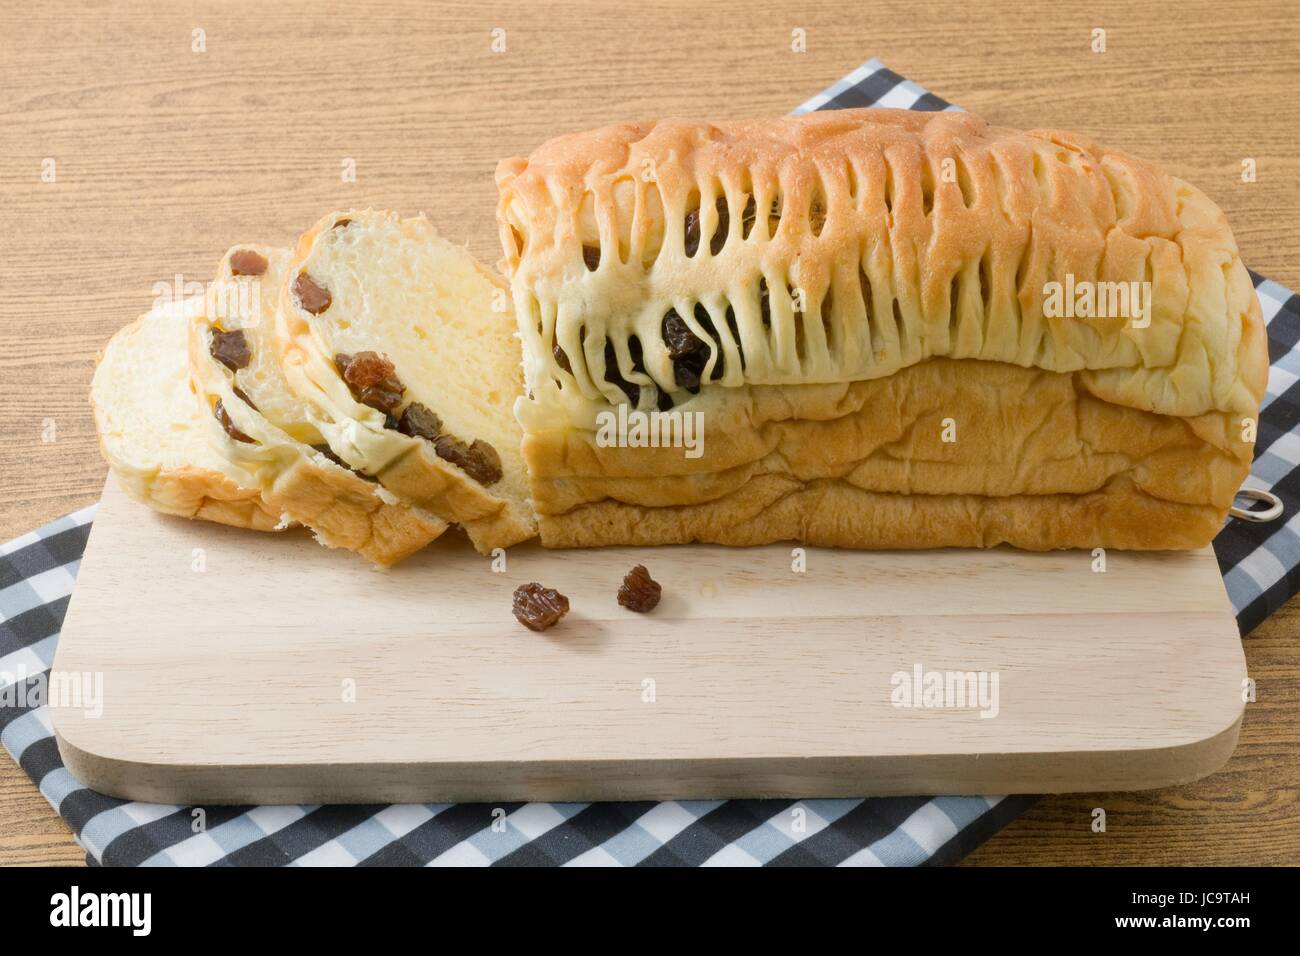 La cucina e il cibo delizioso marrone a fette di pane passito sul tagliere di legno. Foto Stock